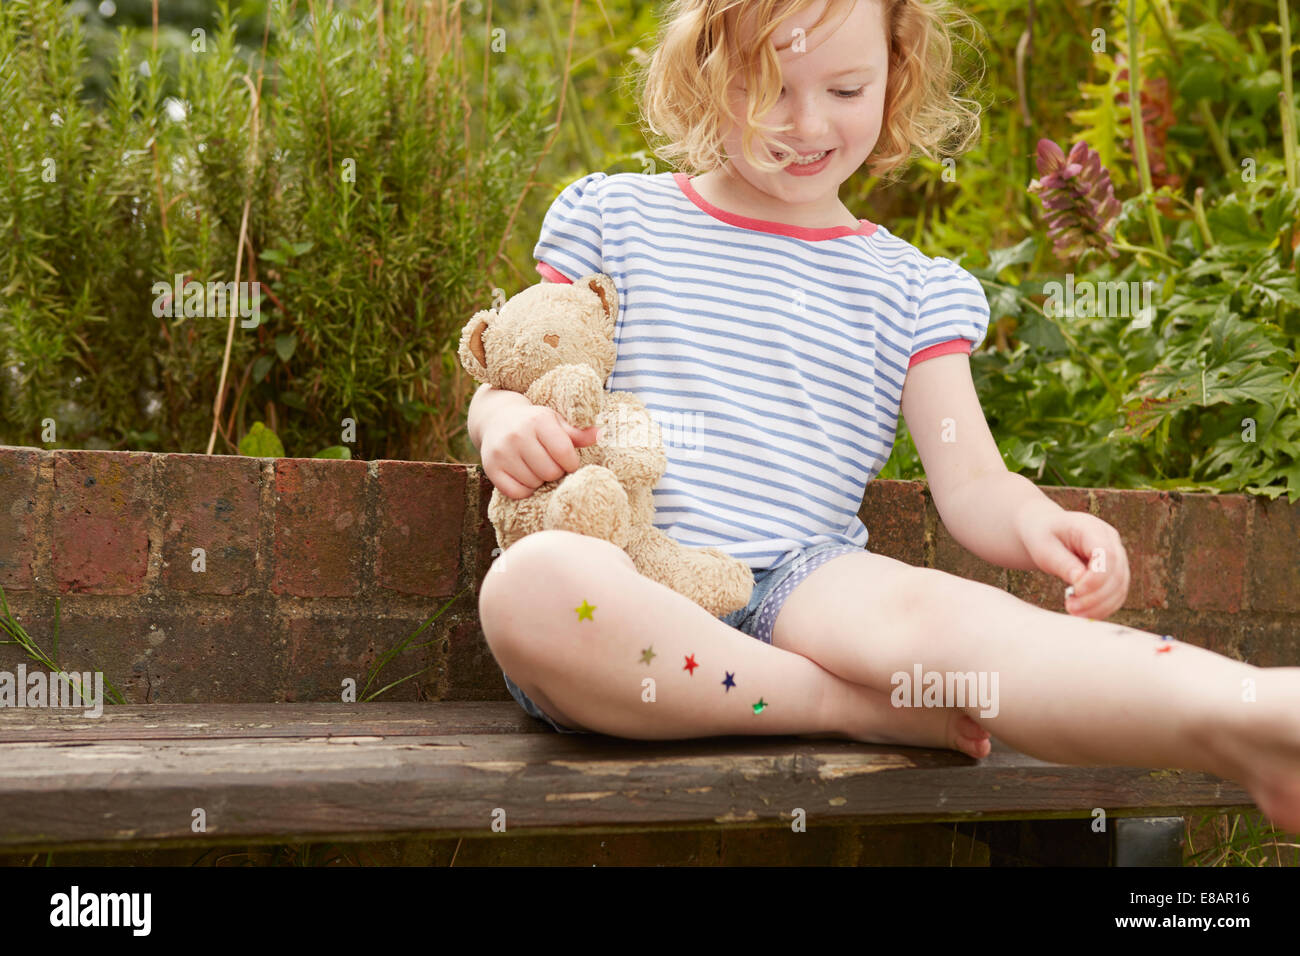 Girl sticking stars on legs on garden seat Stock Photo